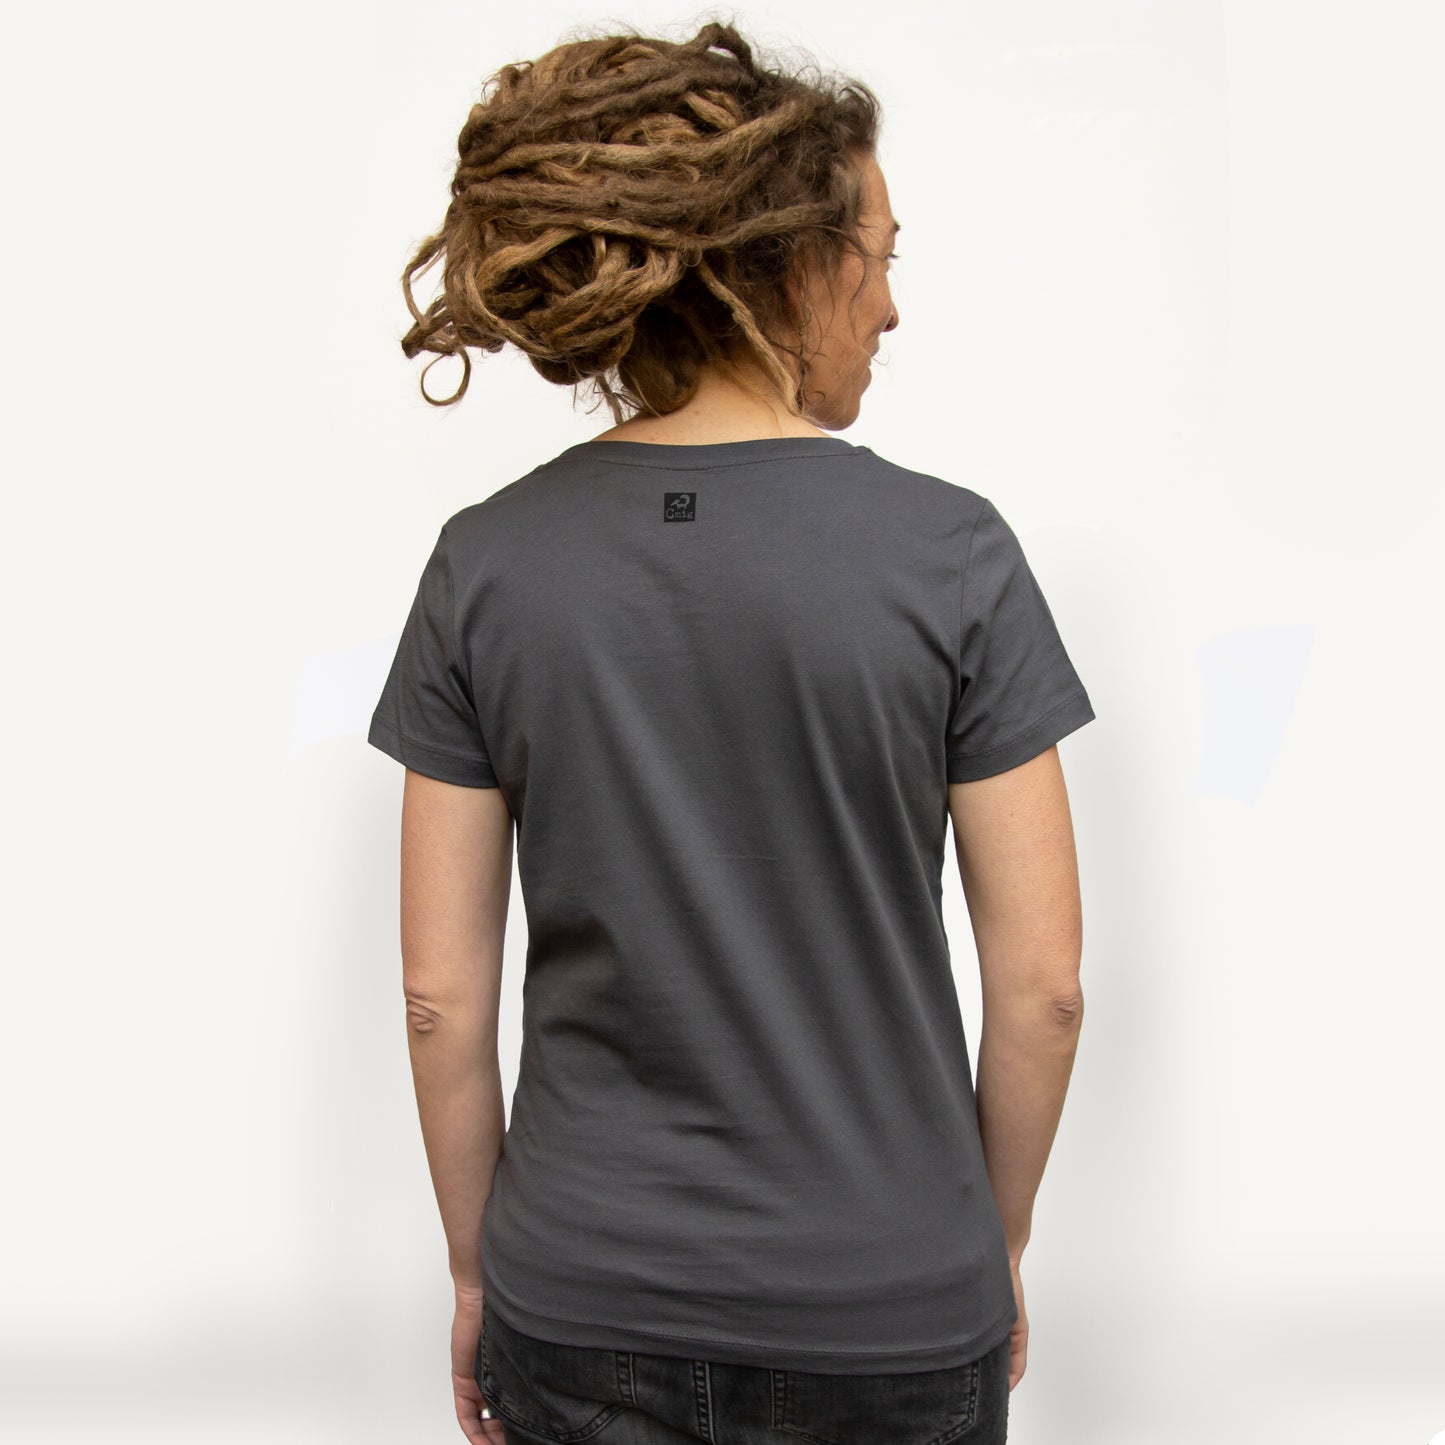 Waldblumen T-Shirt in anthracite XS-XXL